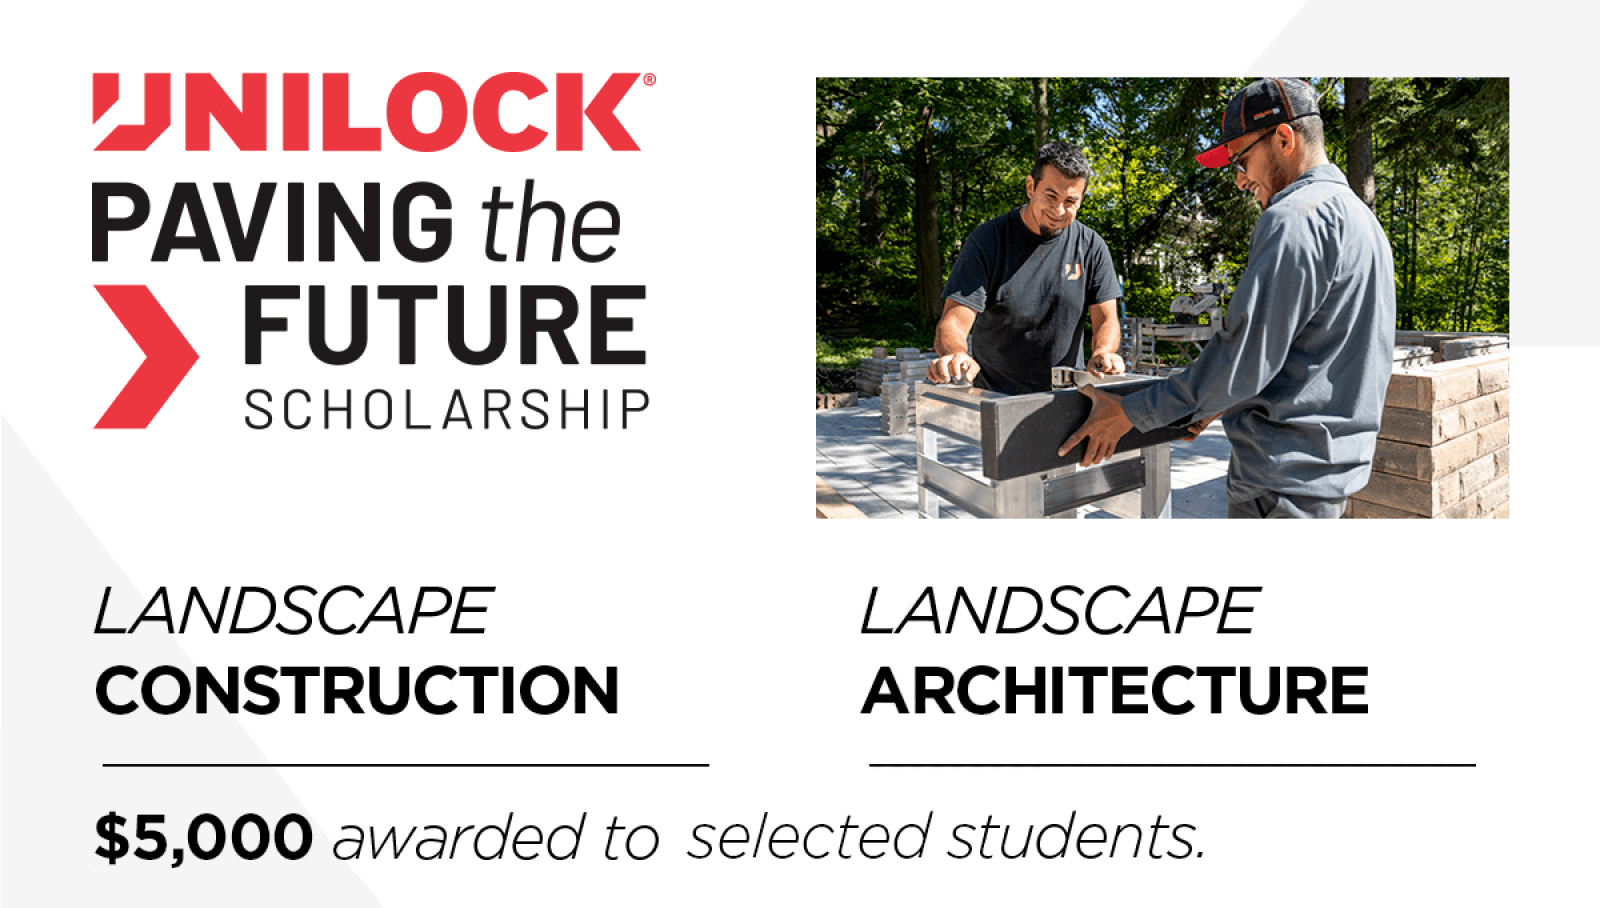 Apply now for 2023 Unilock scholarships